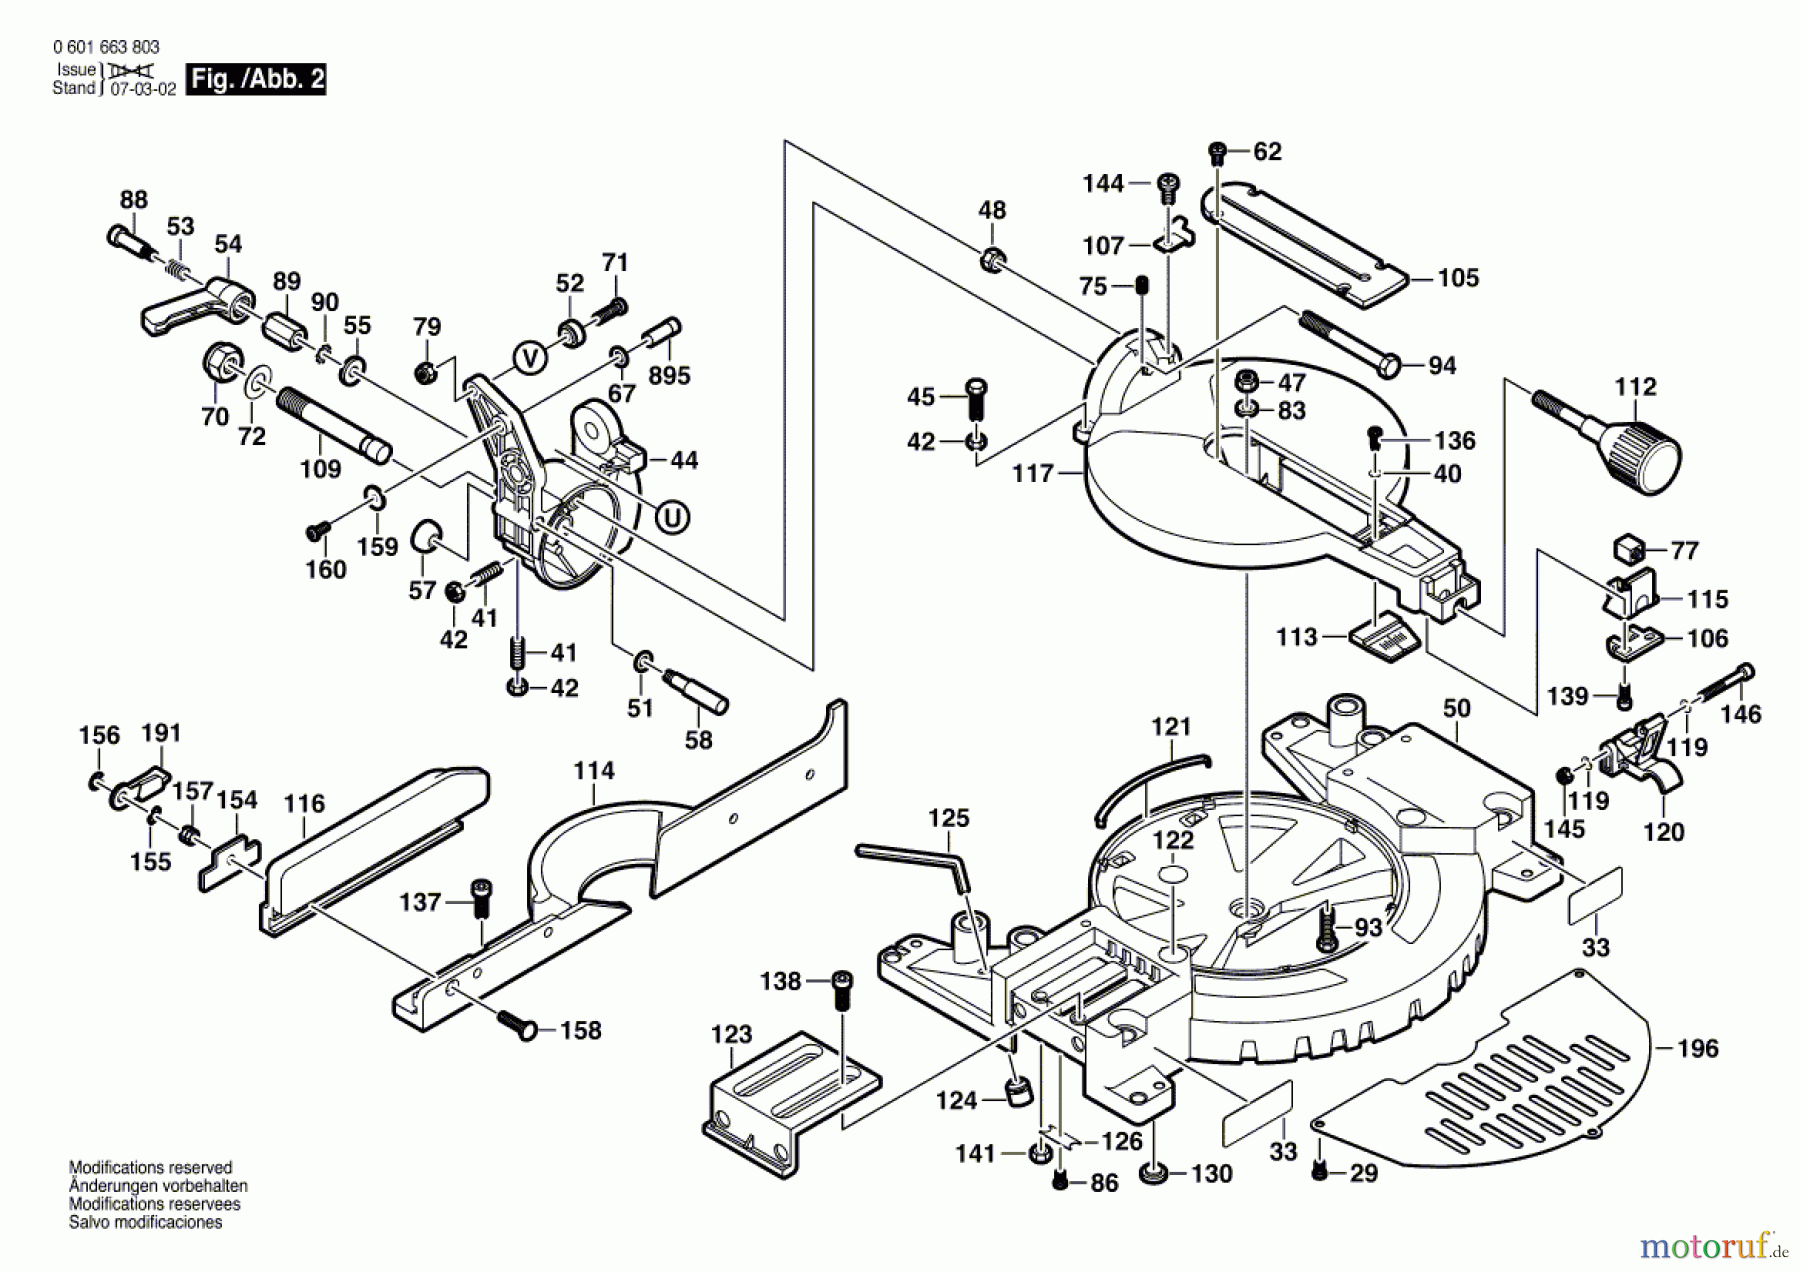  Bosch Werkzeug Sägetisch GKG 24 V Seite 2